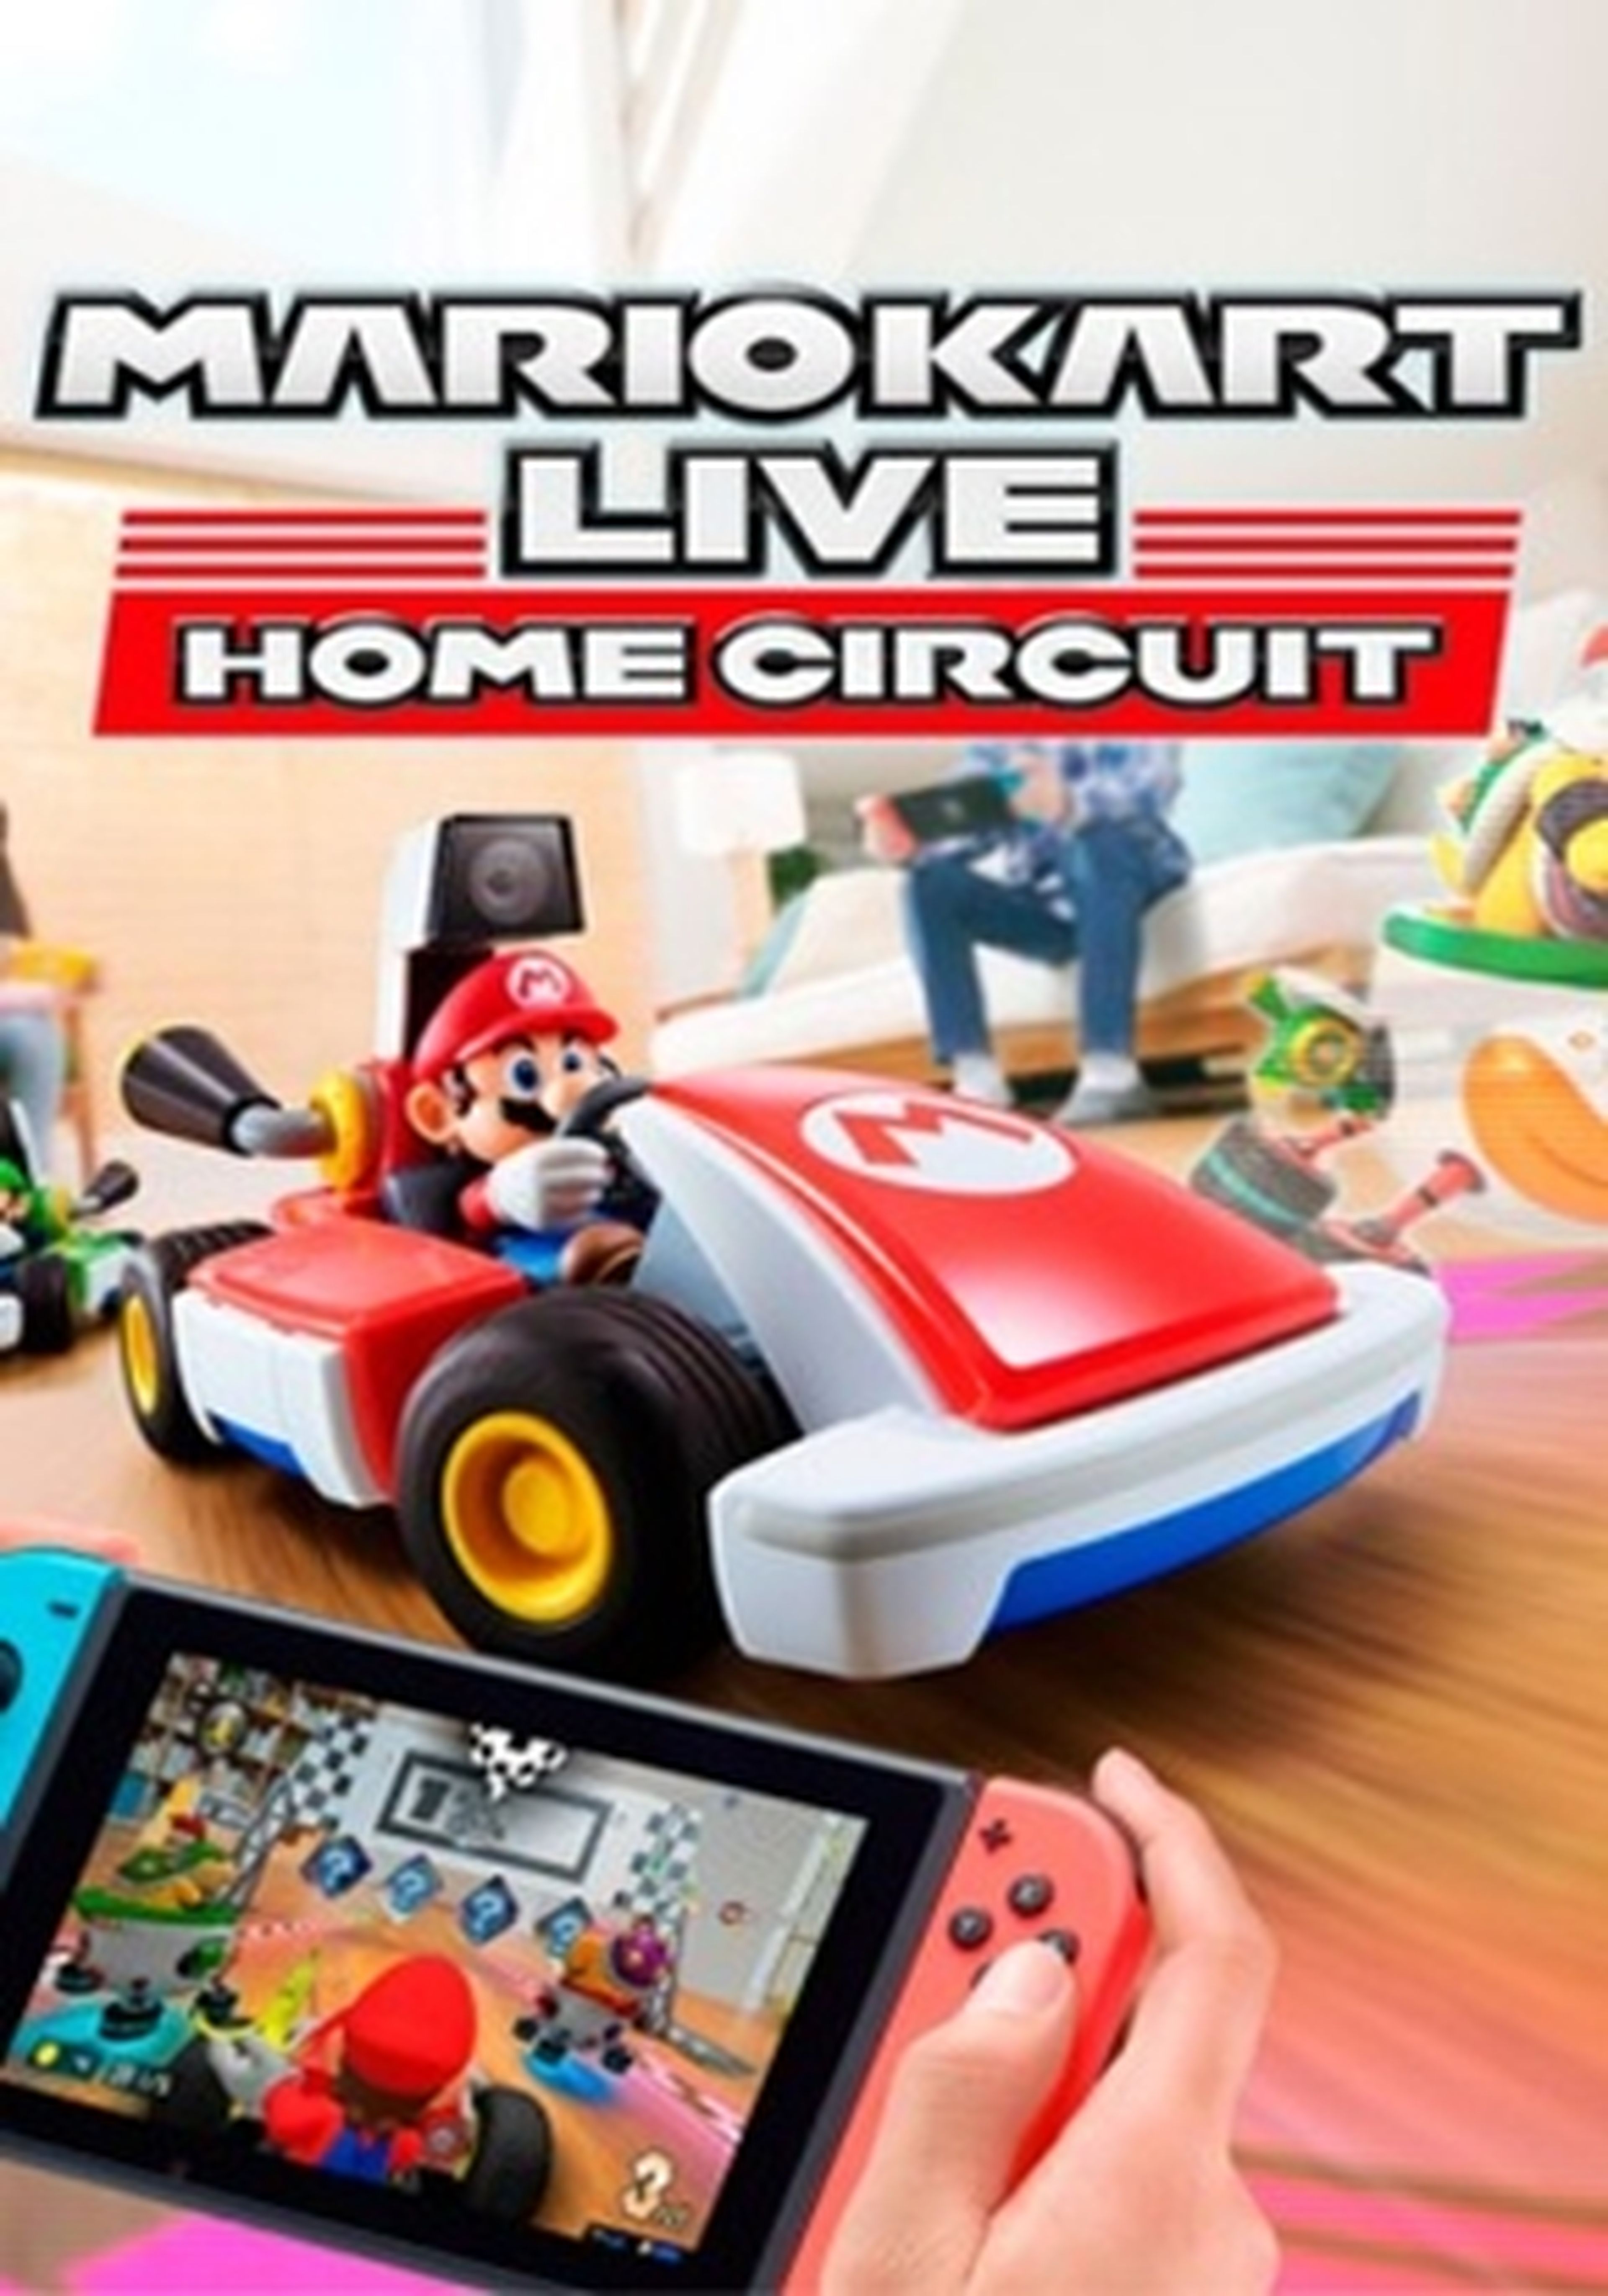 PS5 y PS4 ya tienen su propio Mario Kart Live con Hot Wheels